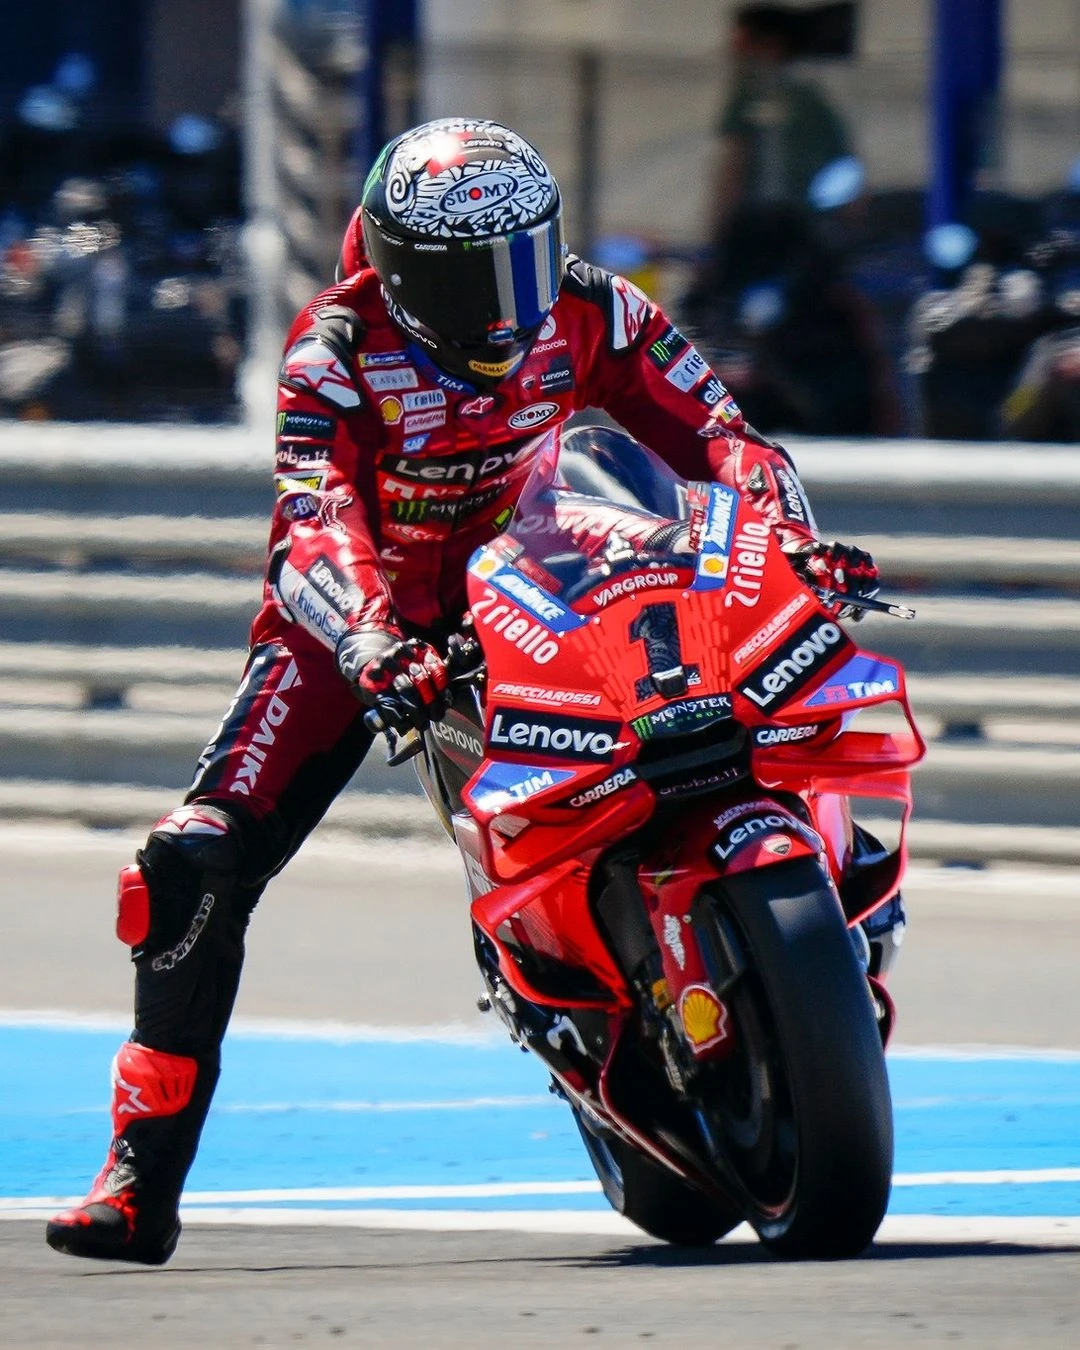 MotoGP Jerez Testi: Bu motosikletten pozitif bir şey alamayız gallery image 0